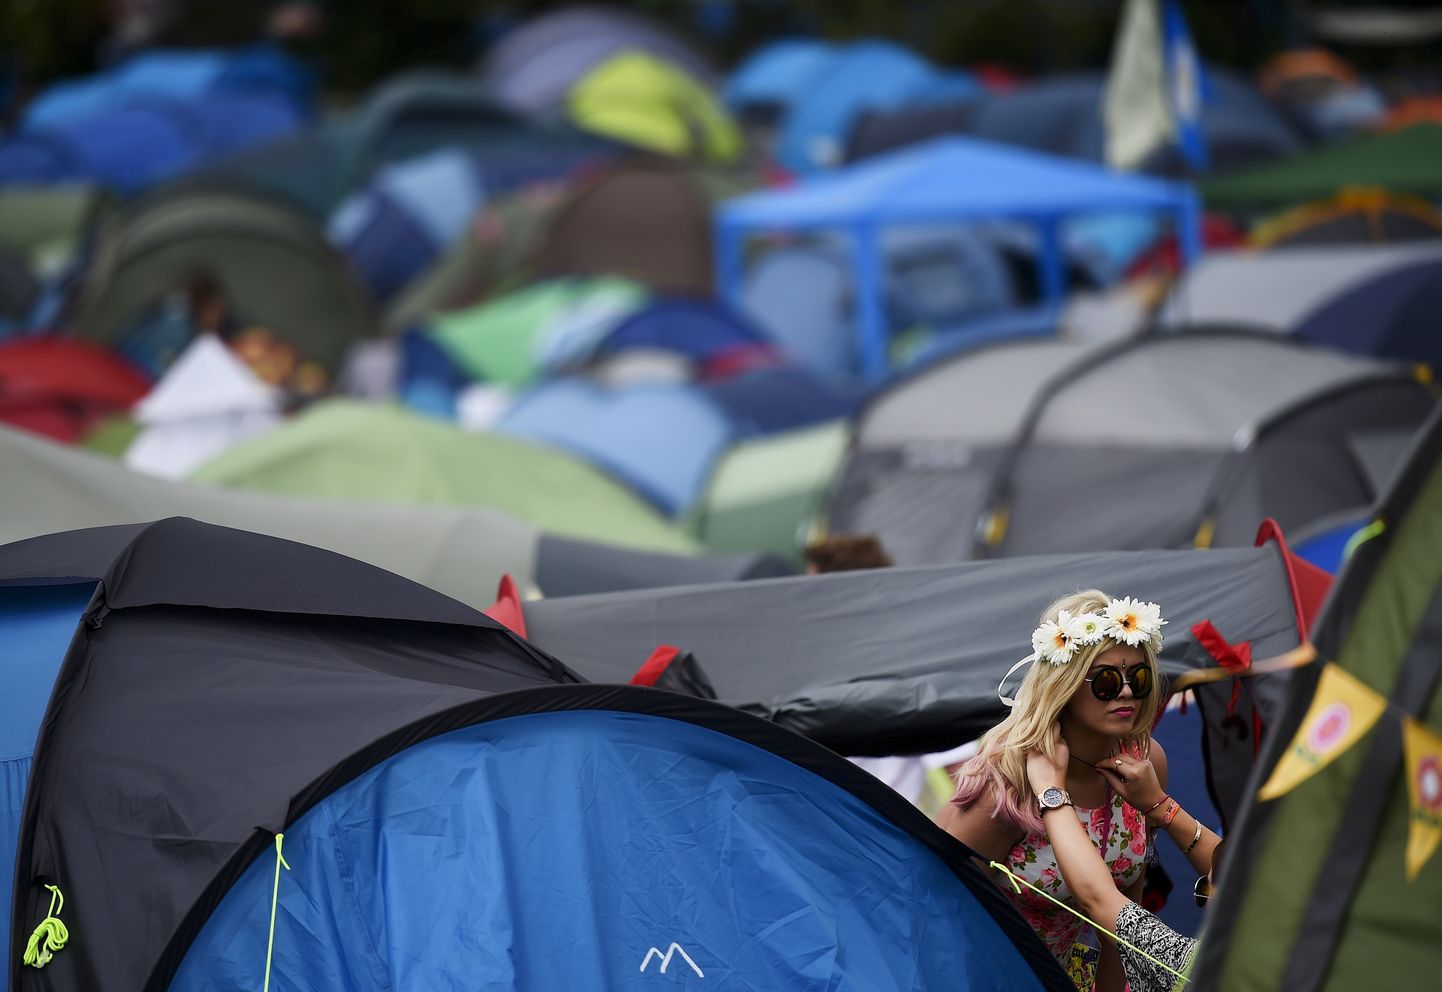 Палатка на музыкальном фестивале Glastonbury. Иллюстративное фото.